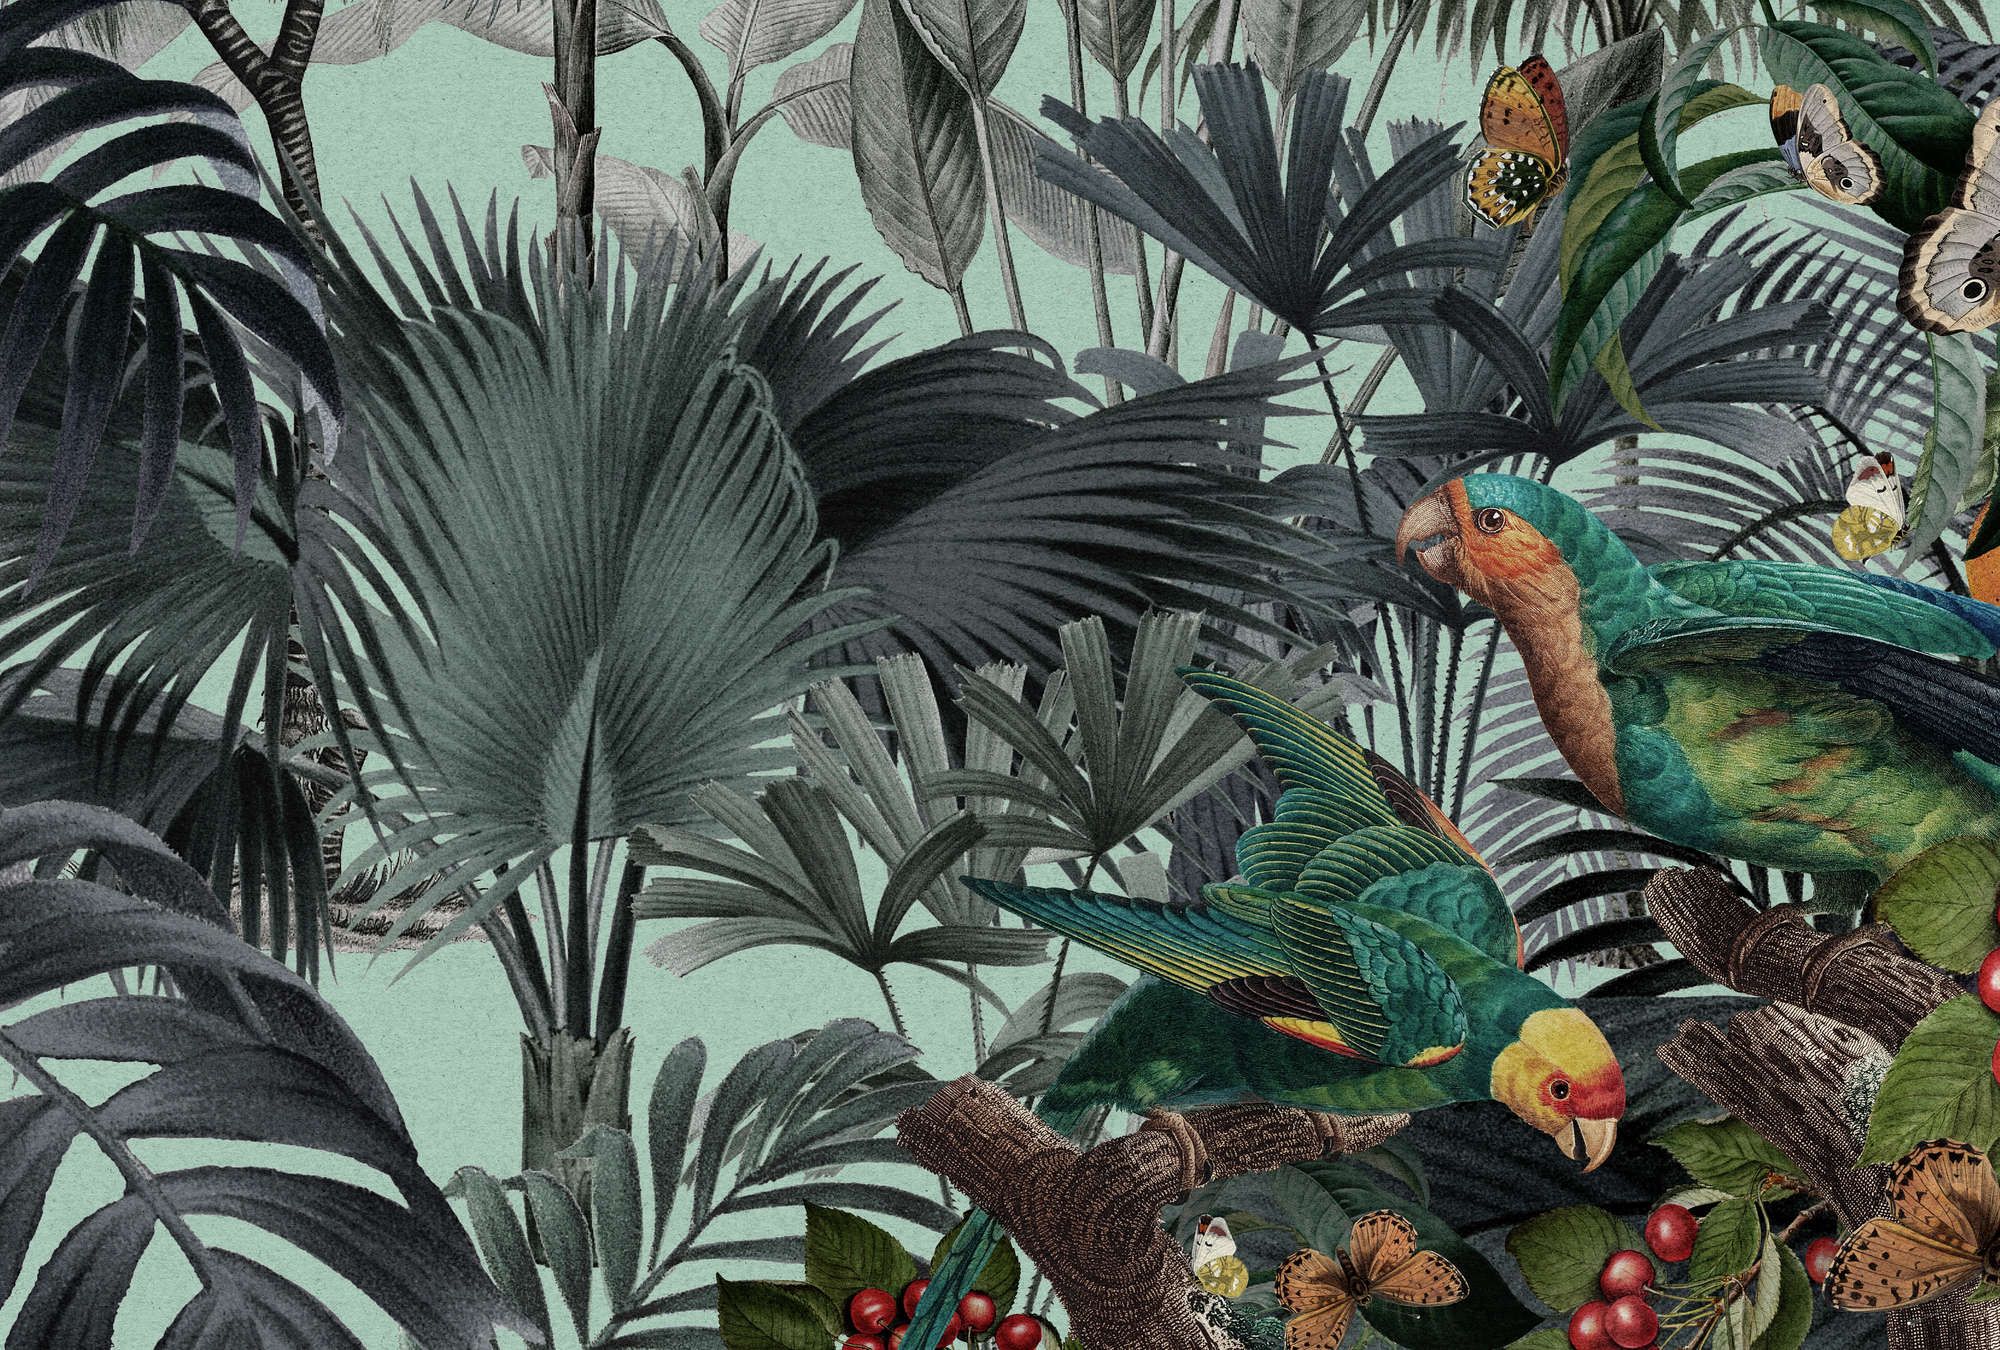             Papel pintado fotográfico »arabella« - jungla y loros sobre papel kraft - tejido sin tejer, liso, mate
        